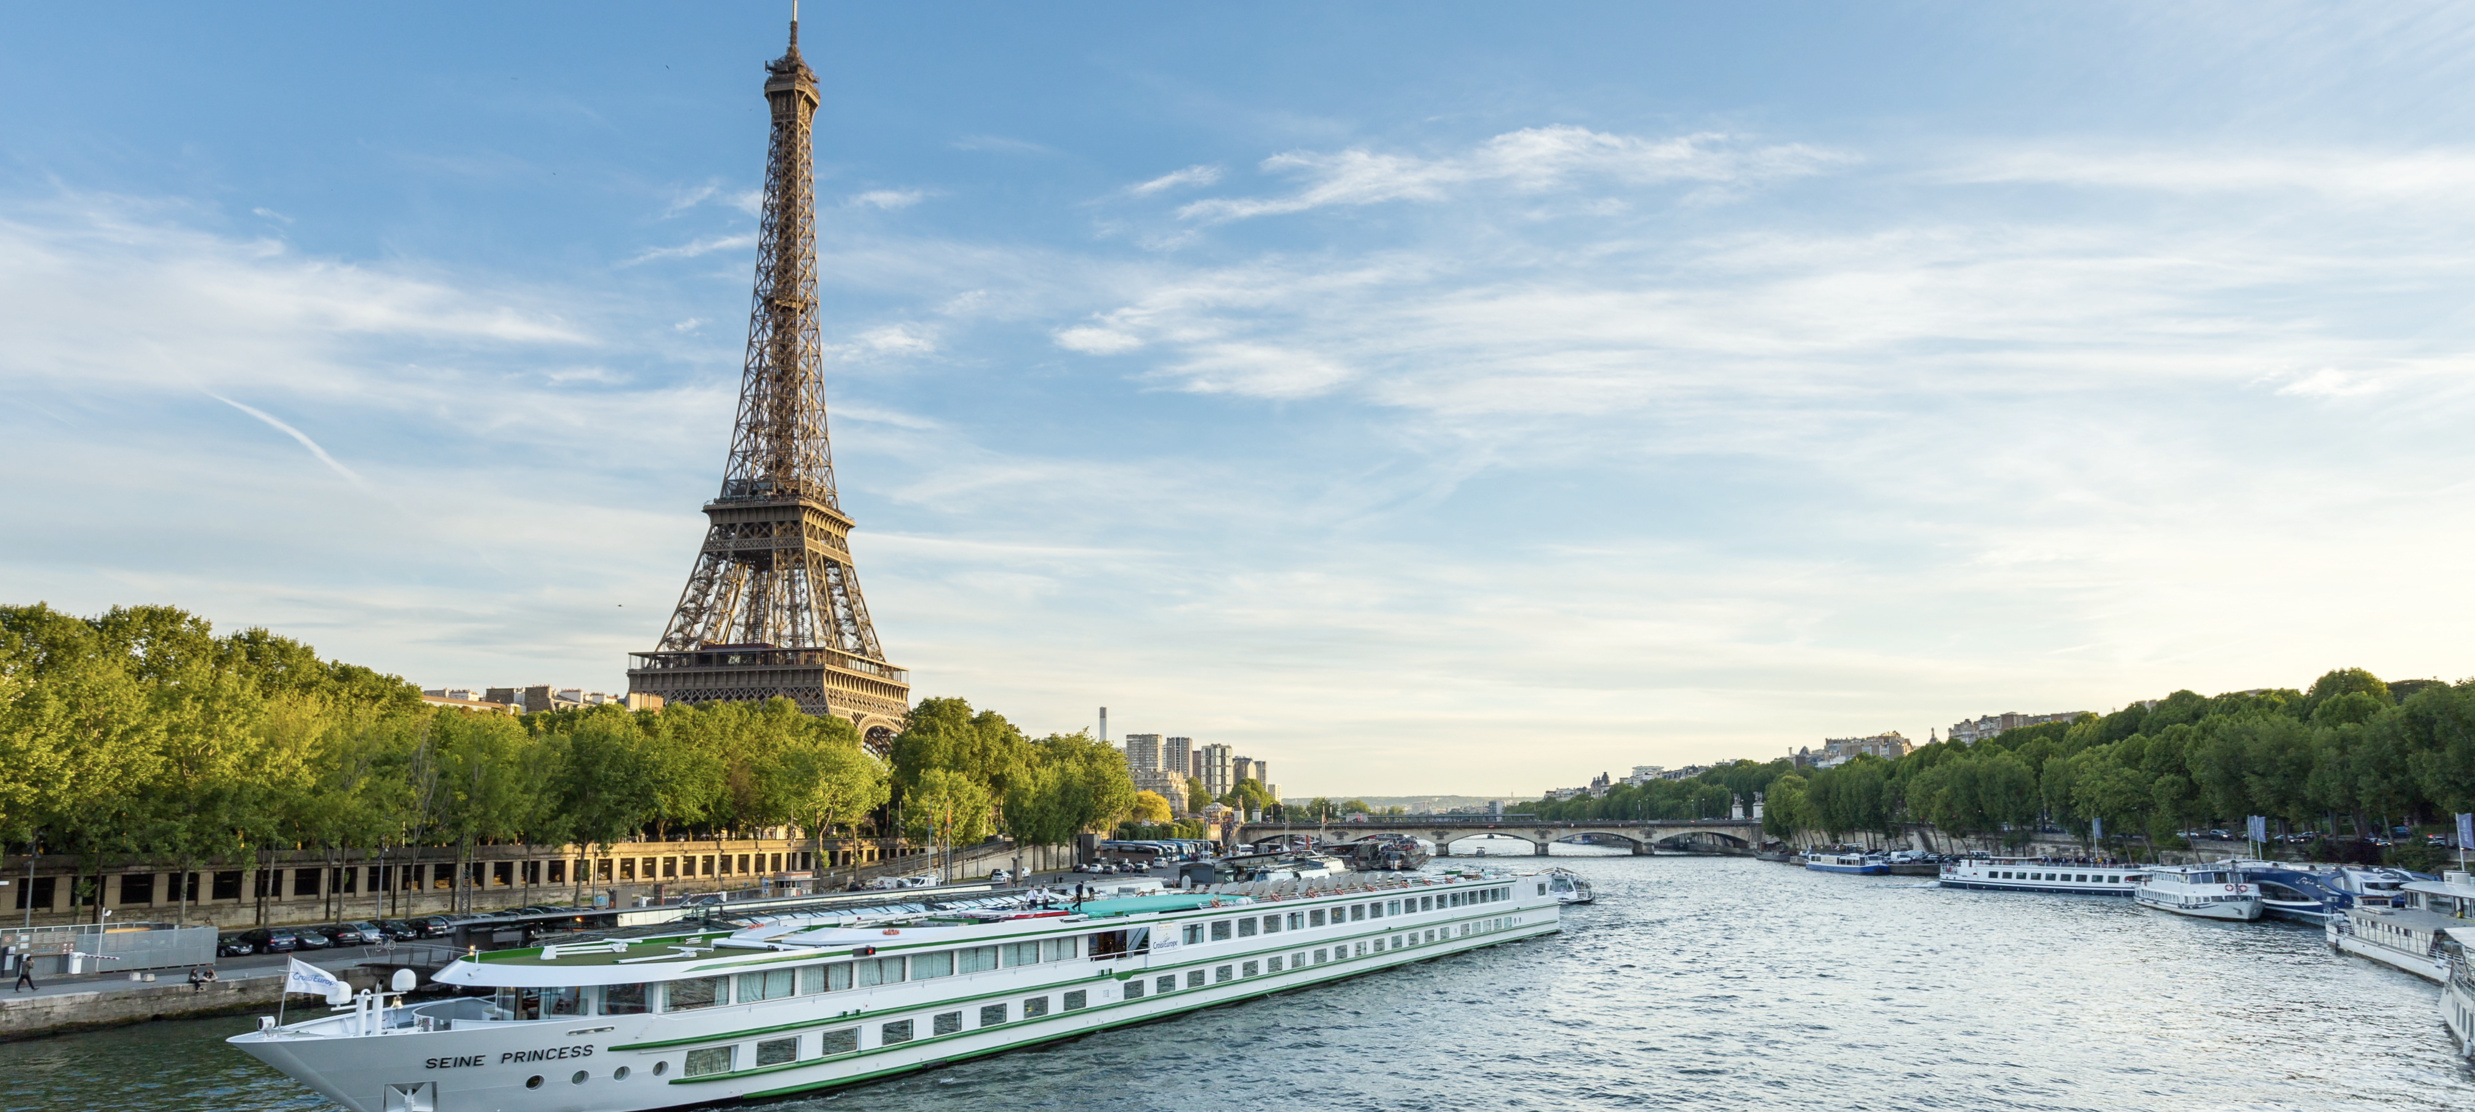 Сена на французском. Эйфелева башня река сена. Париж. Эйфелева башня, река сена. Река сена в Париже. Река сена во Франции.